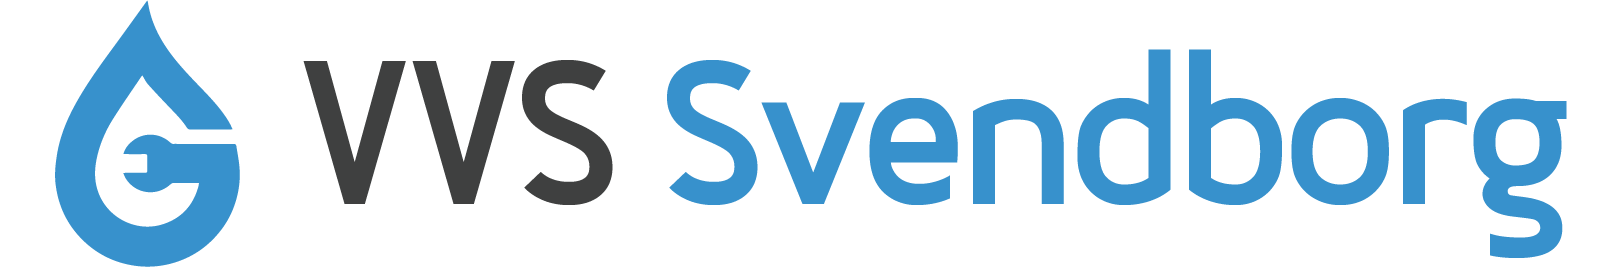 VVS Svendborg logo